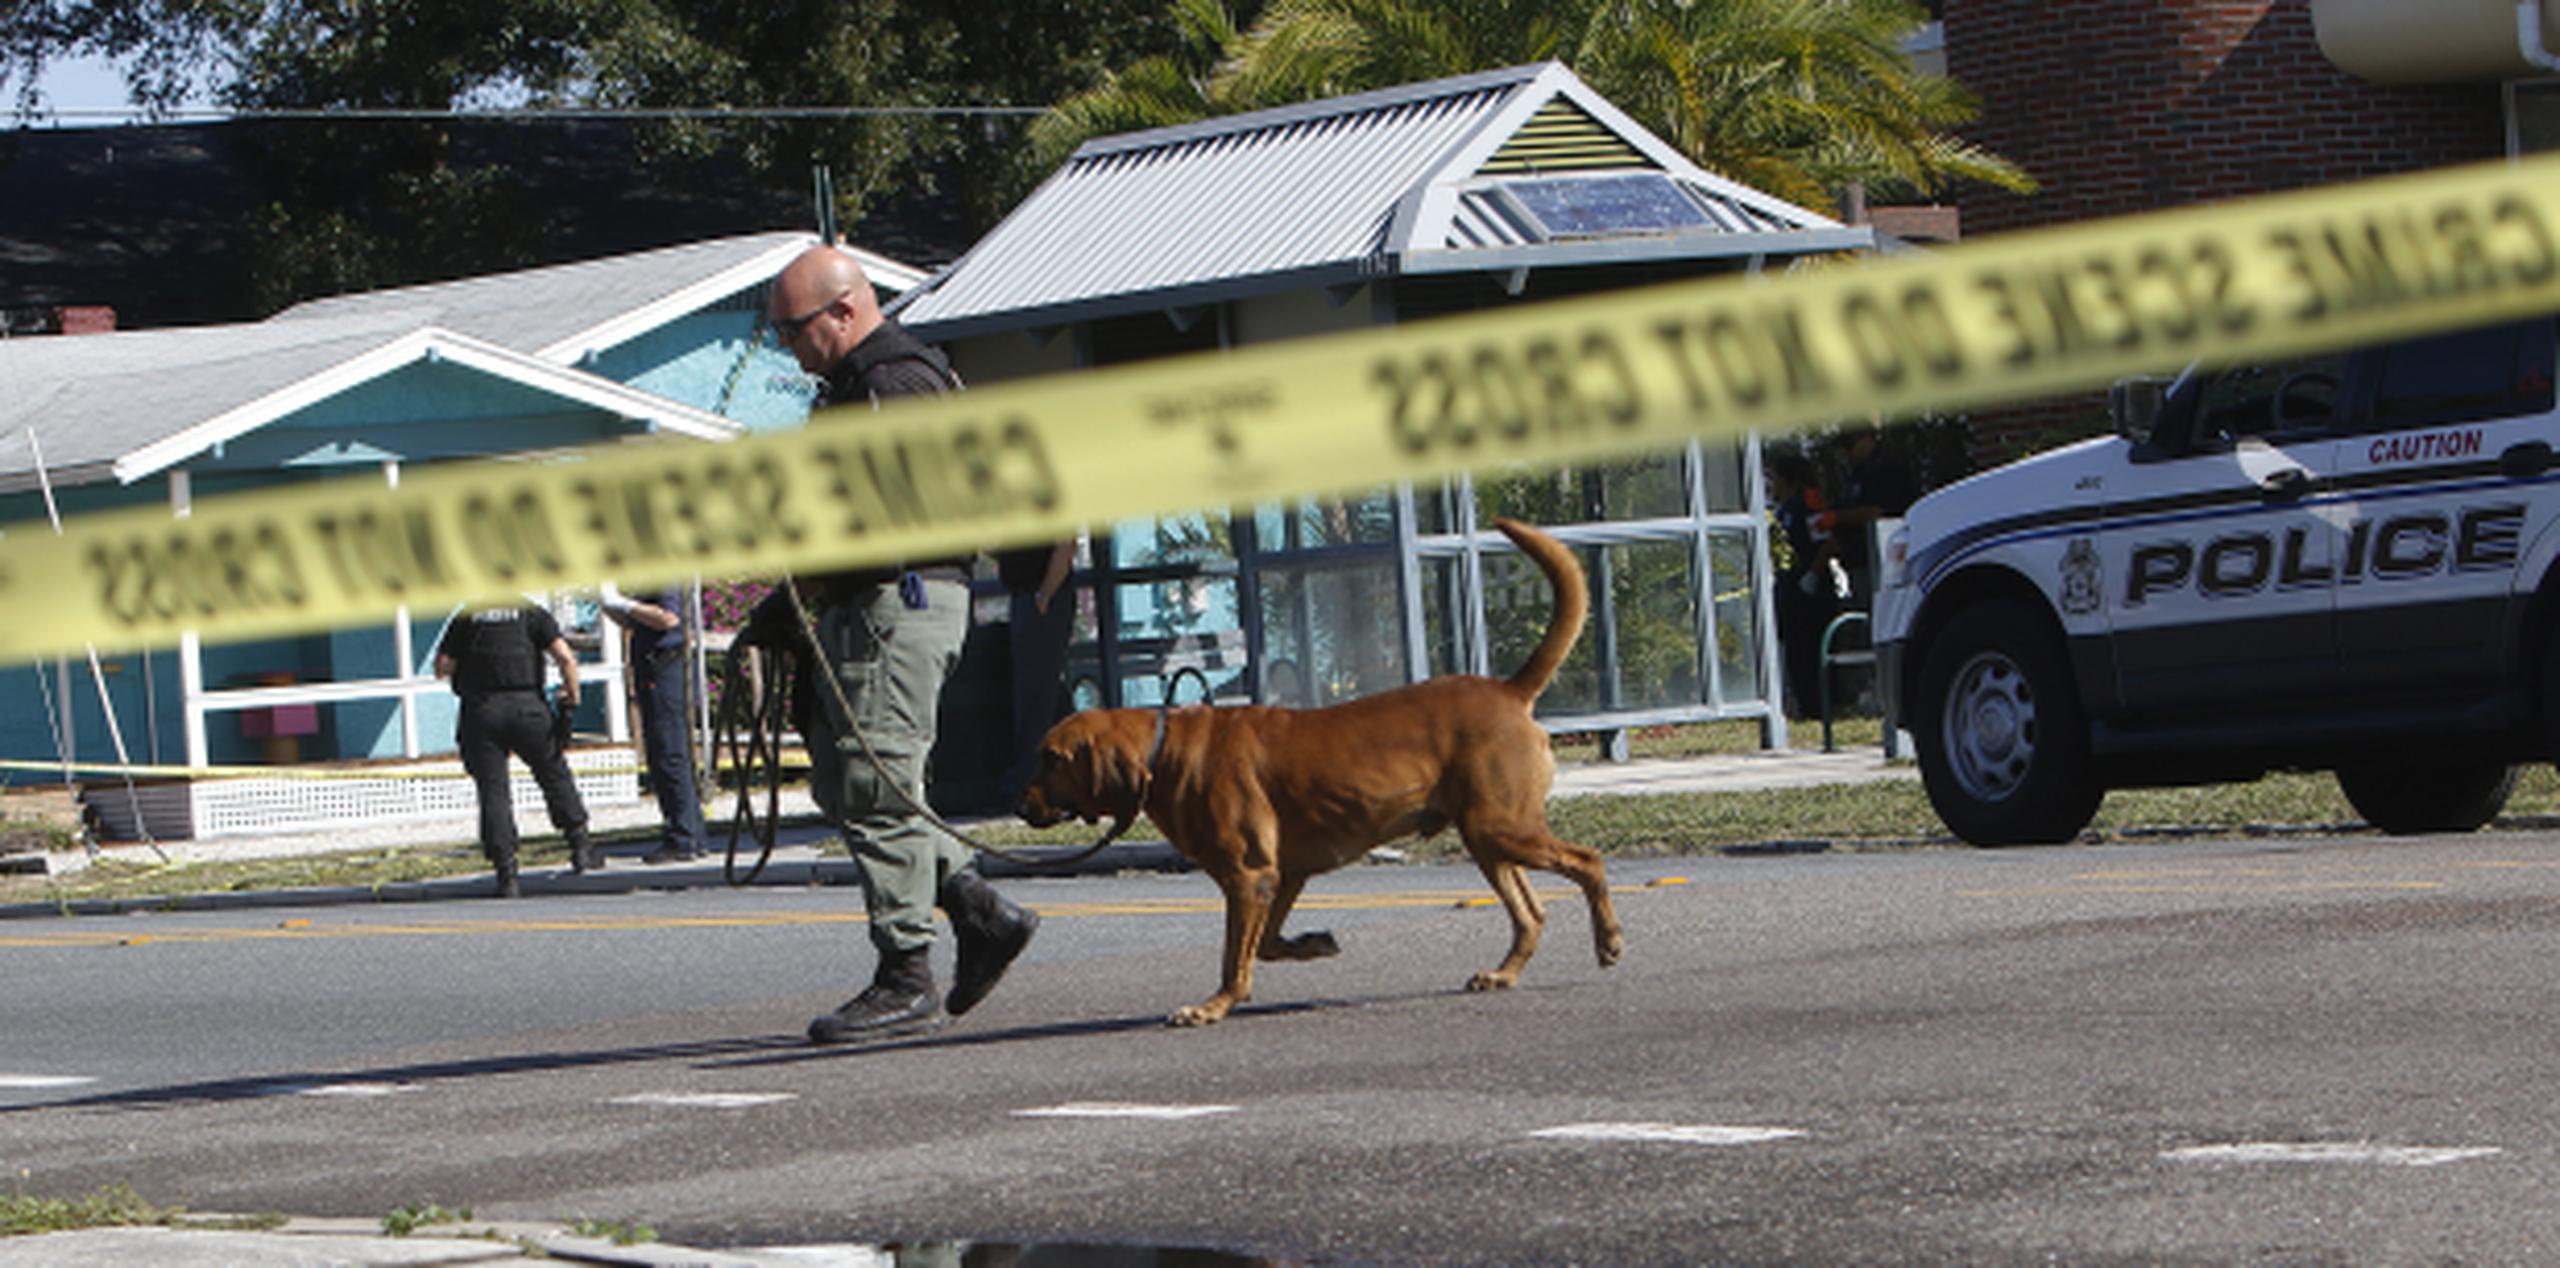 Las autoridades siguen la investigación tras un asesinato en la avenida Nebraska del vecindario Seminole Heights, en Tampa.
 (AP / Octavio Jones / Tampa Bay Times)